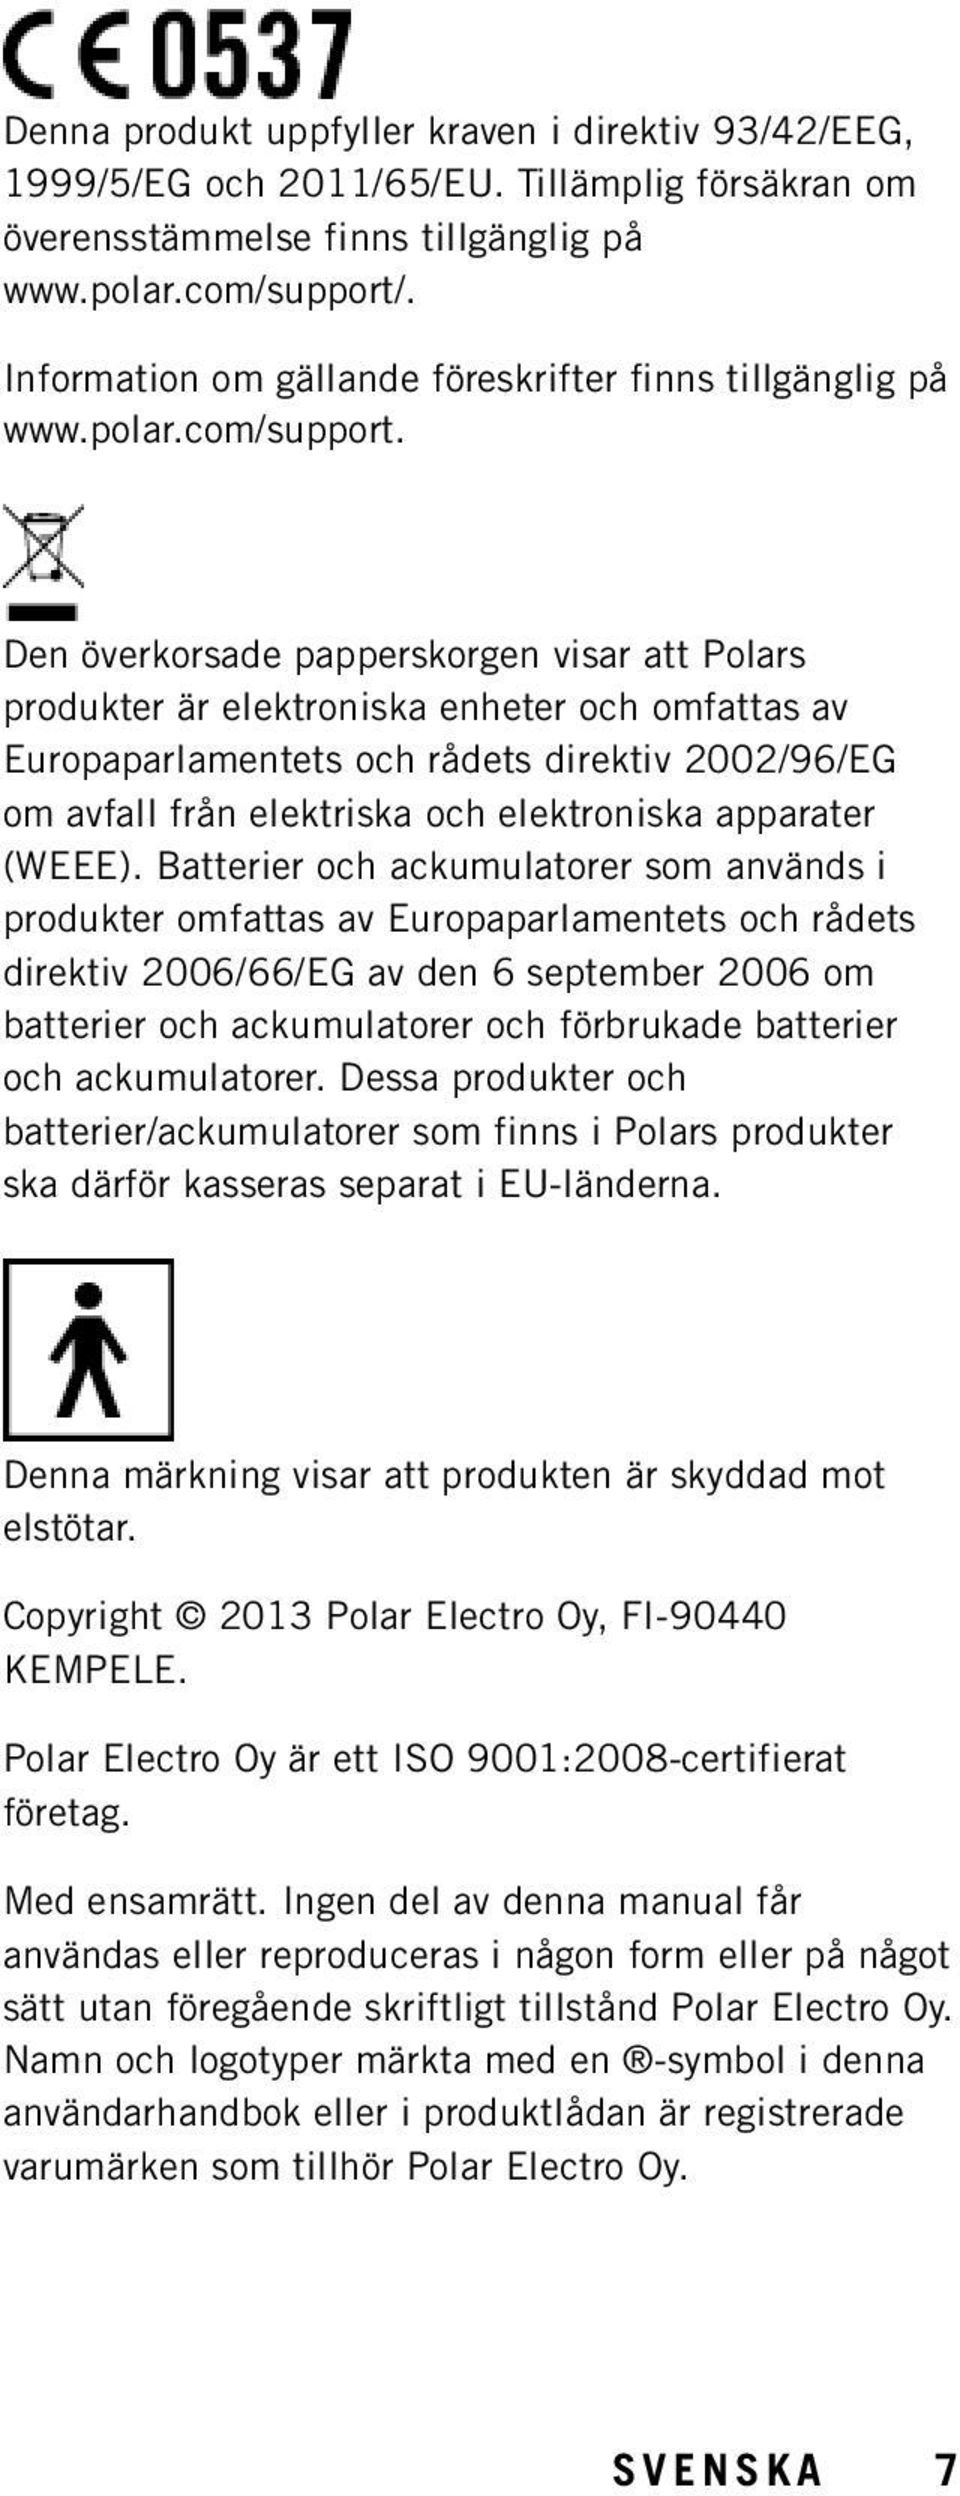 Den överkorsade papperskorgen visar att Polars produkter är elektroniska enheter och omfattas av Europaparlamentets och rådets direktiv 2002/96/EG om avfall från elektriska och elektroniska apparater